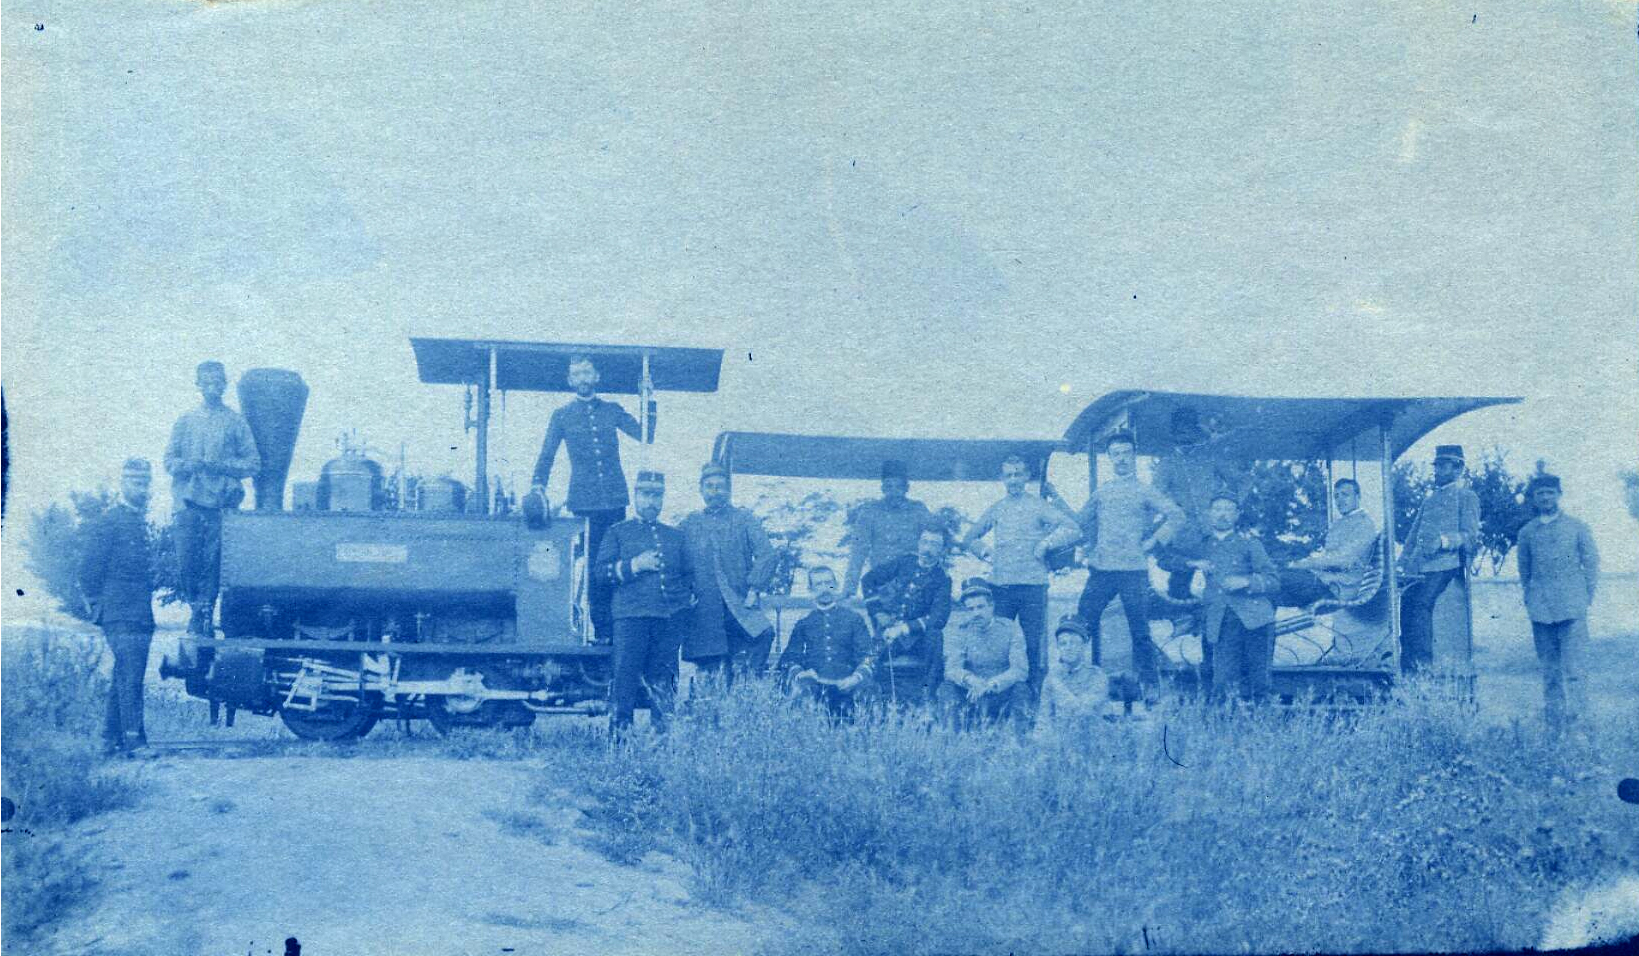 Ingenieros en un tren. 1900